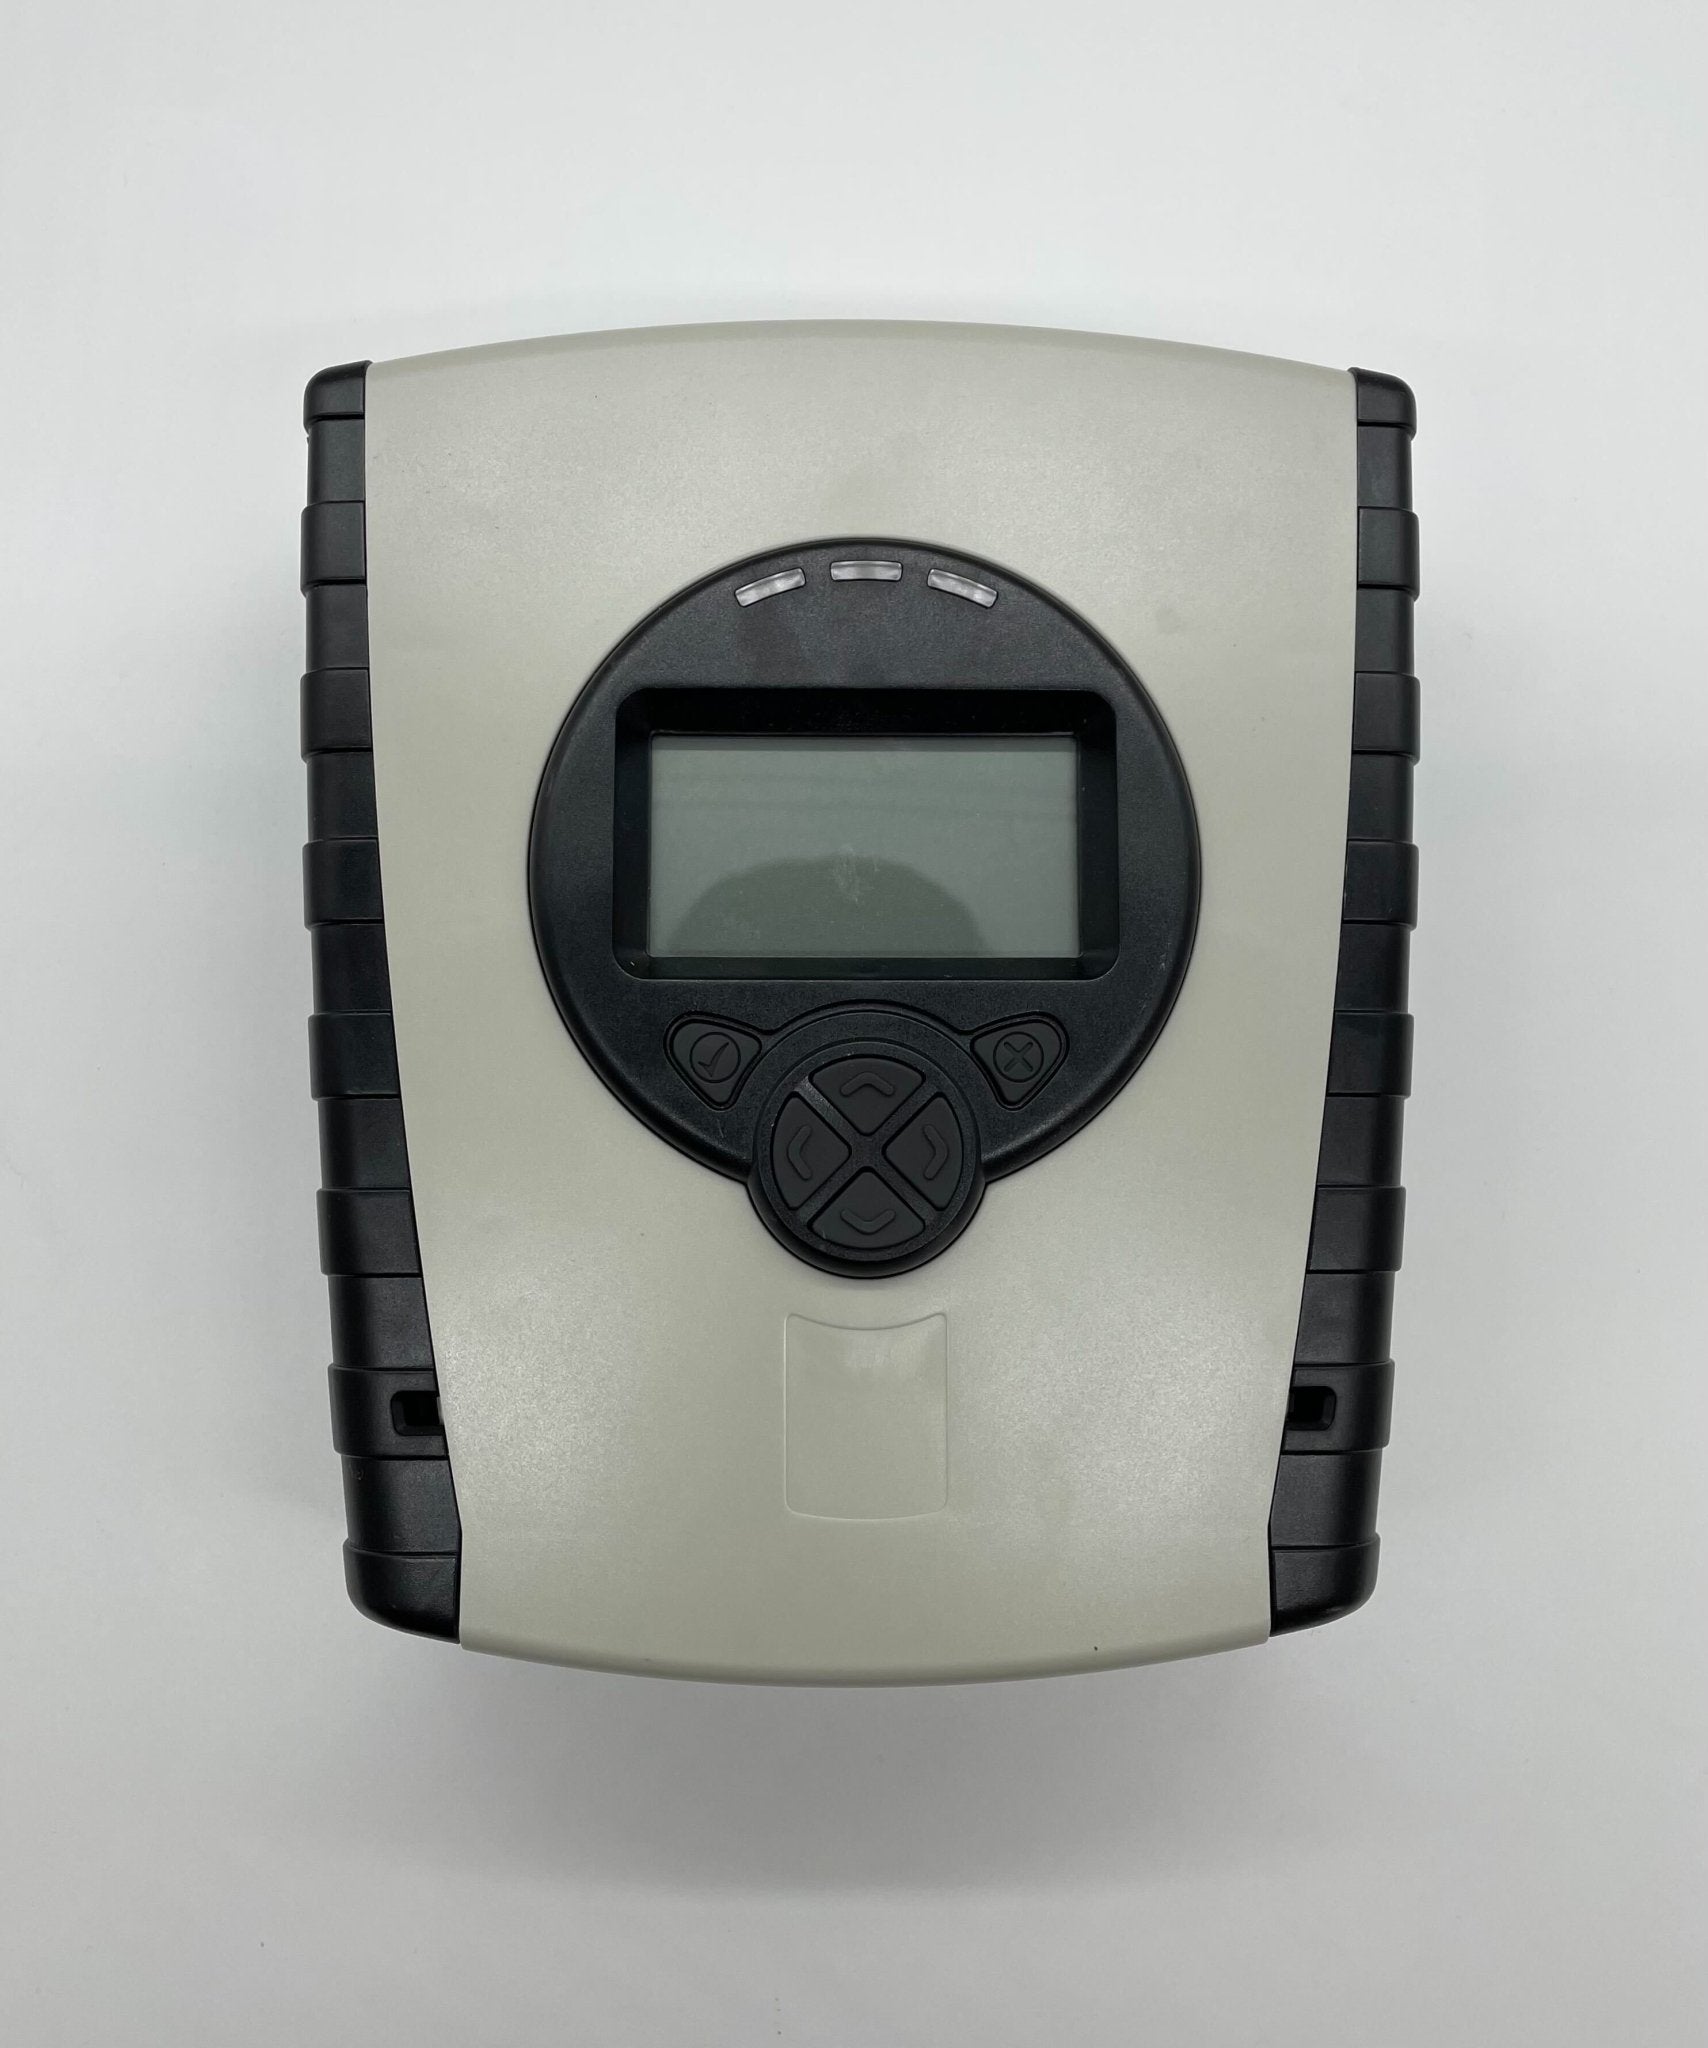 Fireray 5000-003 - The Fire Alarm Supplier